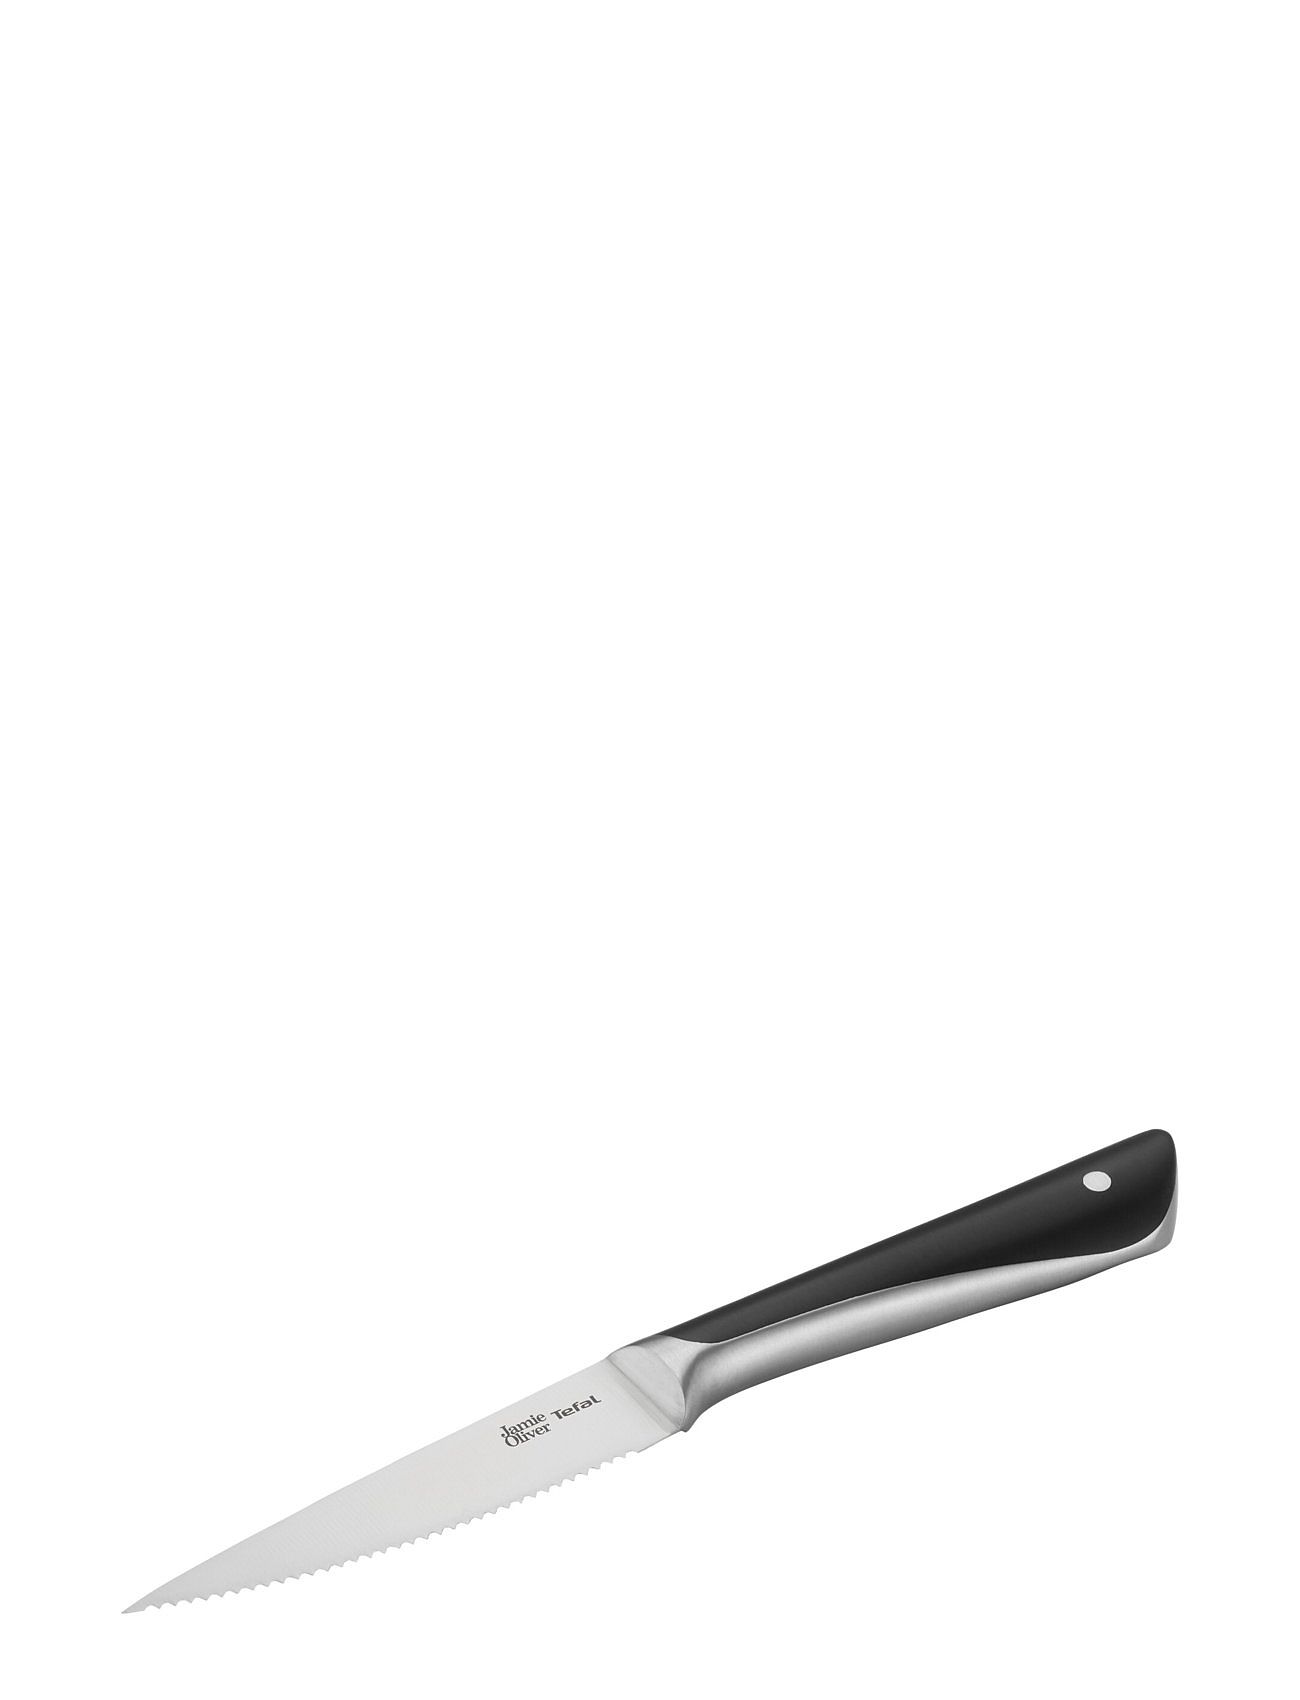 Jamie Oliver Knife Set 4Pcs Home Kitchen Knives & Accessories Knife Sets Black Jamie Oliver Tefal